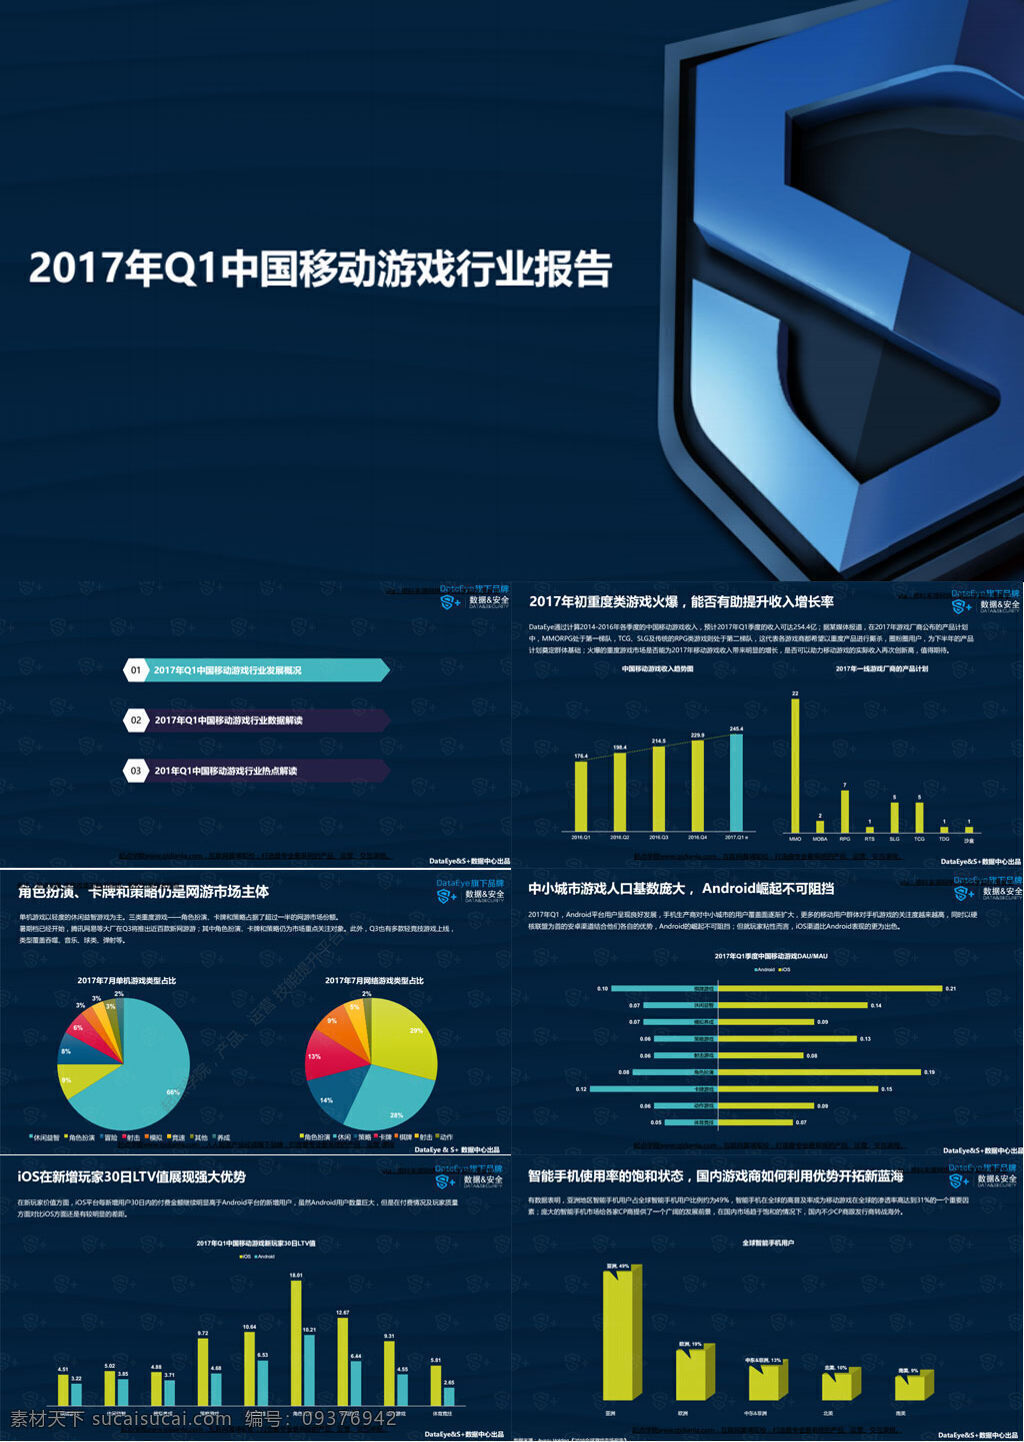 2017 年 q1 中国移动 游戏 行业报告 文库 专业资料 论文 行业分析 数据分析 研究 报告 手游 移动游戏 互联网